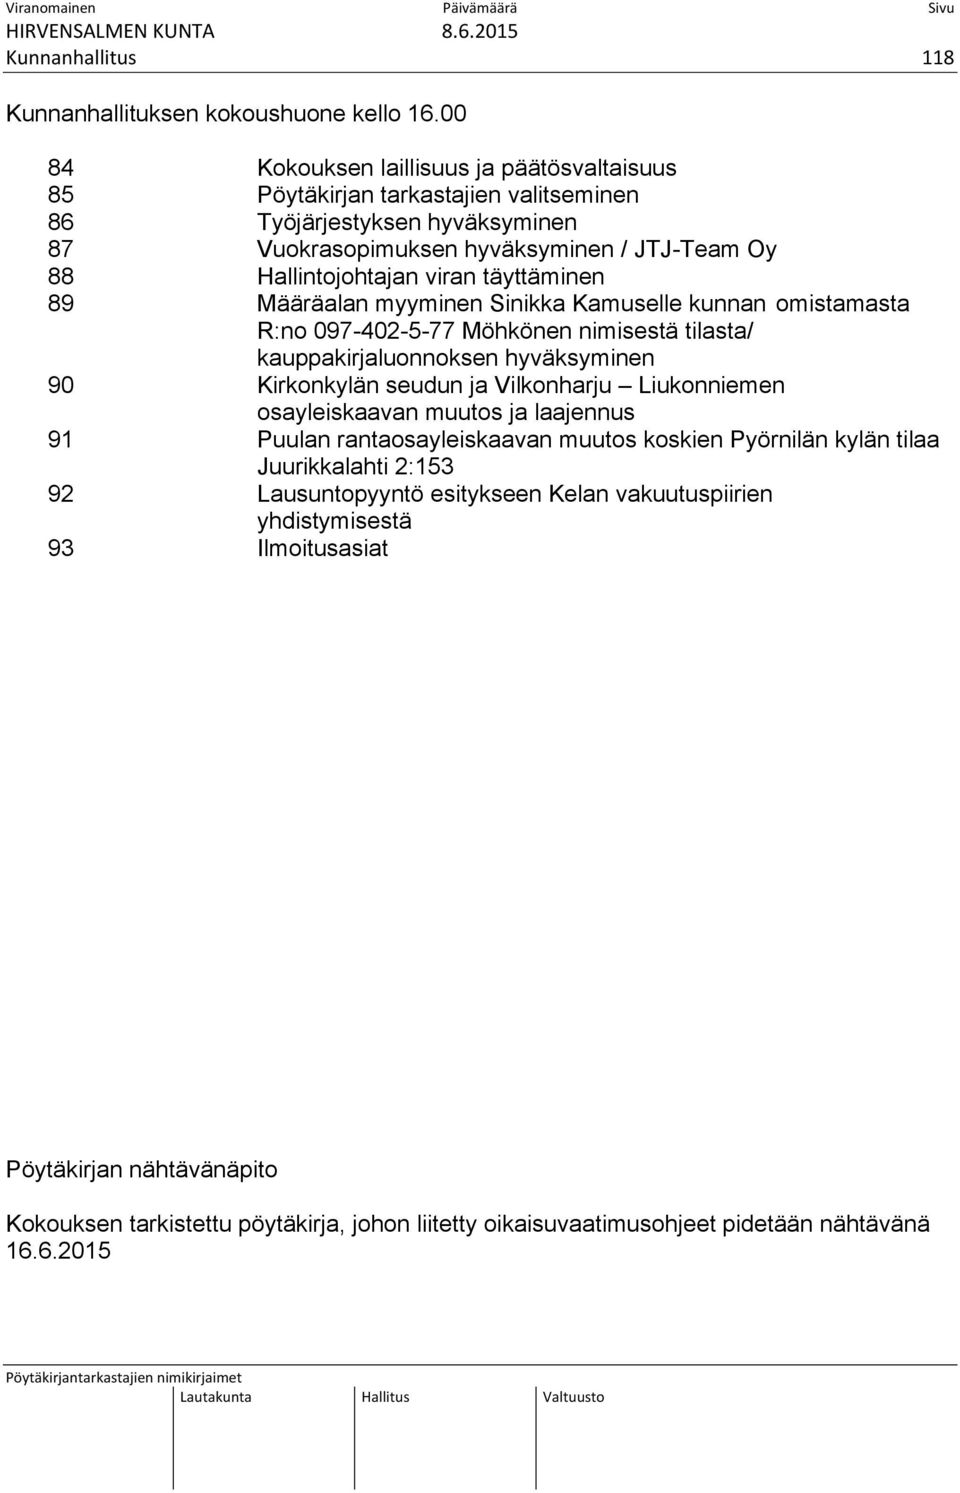 täyttäminen 89 Määräalan myyminen Sinikka Kamuselle kunnan omistamasta R:no 097-402-5-77 Möhkönen nimisestä tilasta/ kauppakirjaluonnoksen hyväksyminen 90 Kirkonkylän seudun ja Vilkonharju